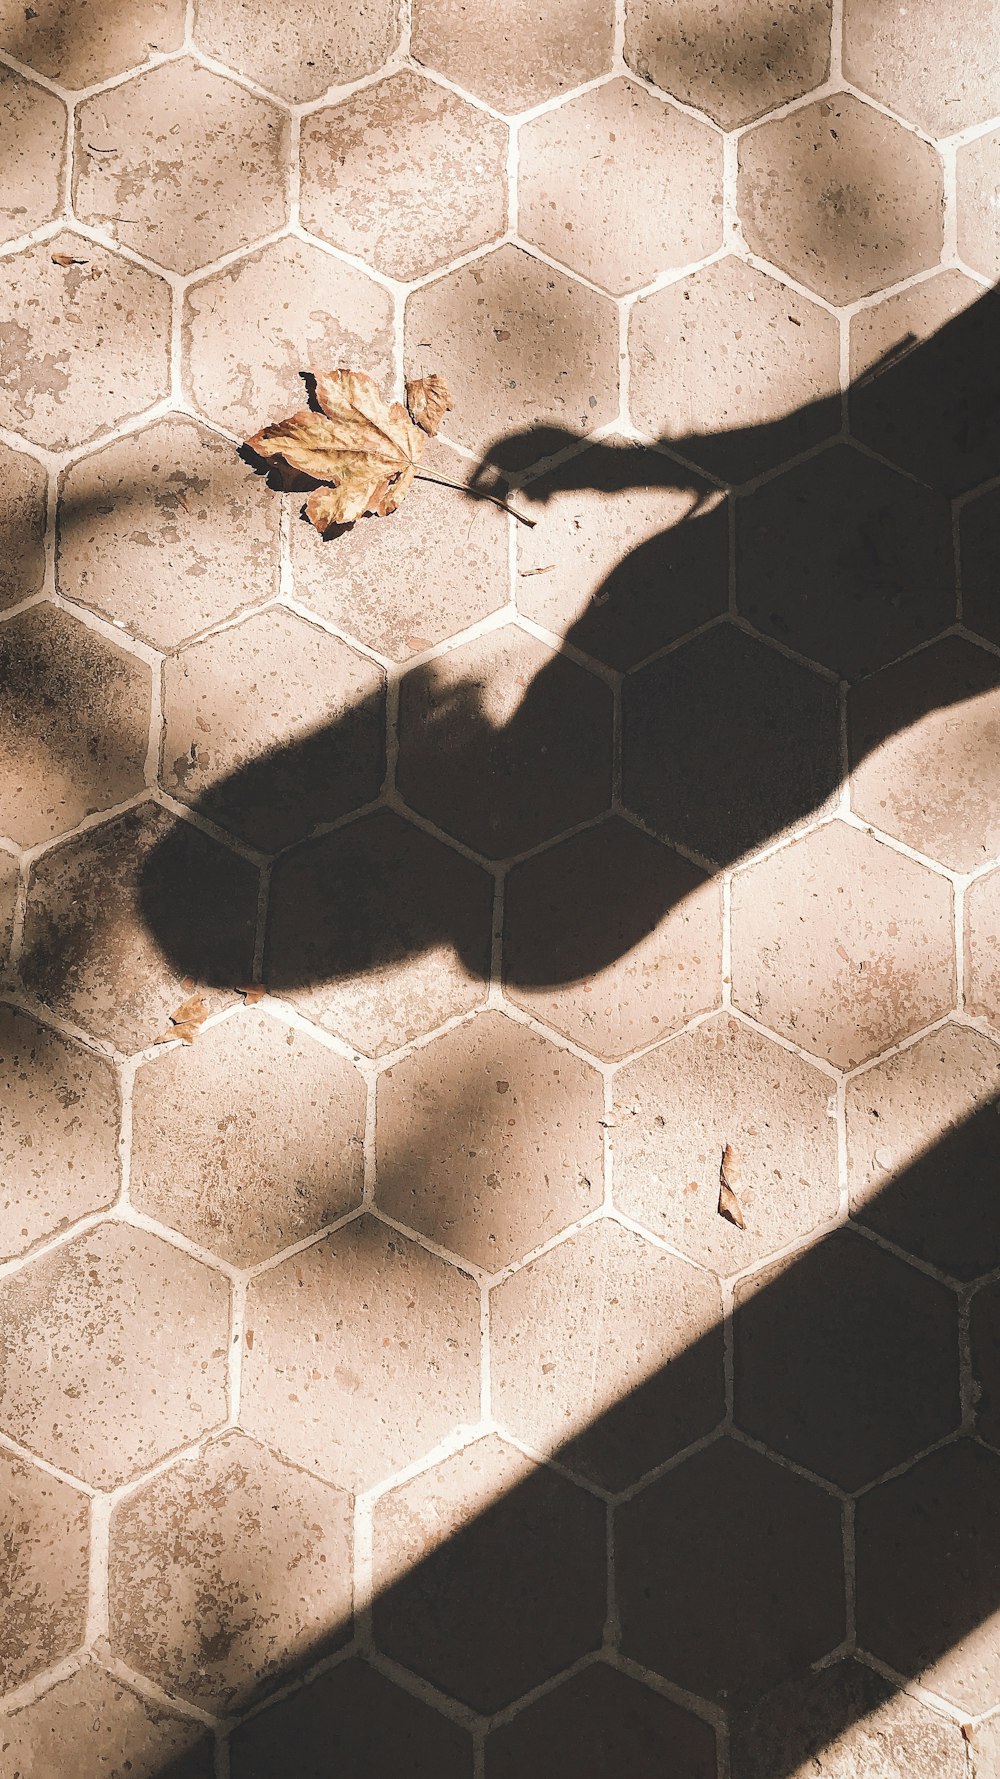 brown leaf on brick pathway